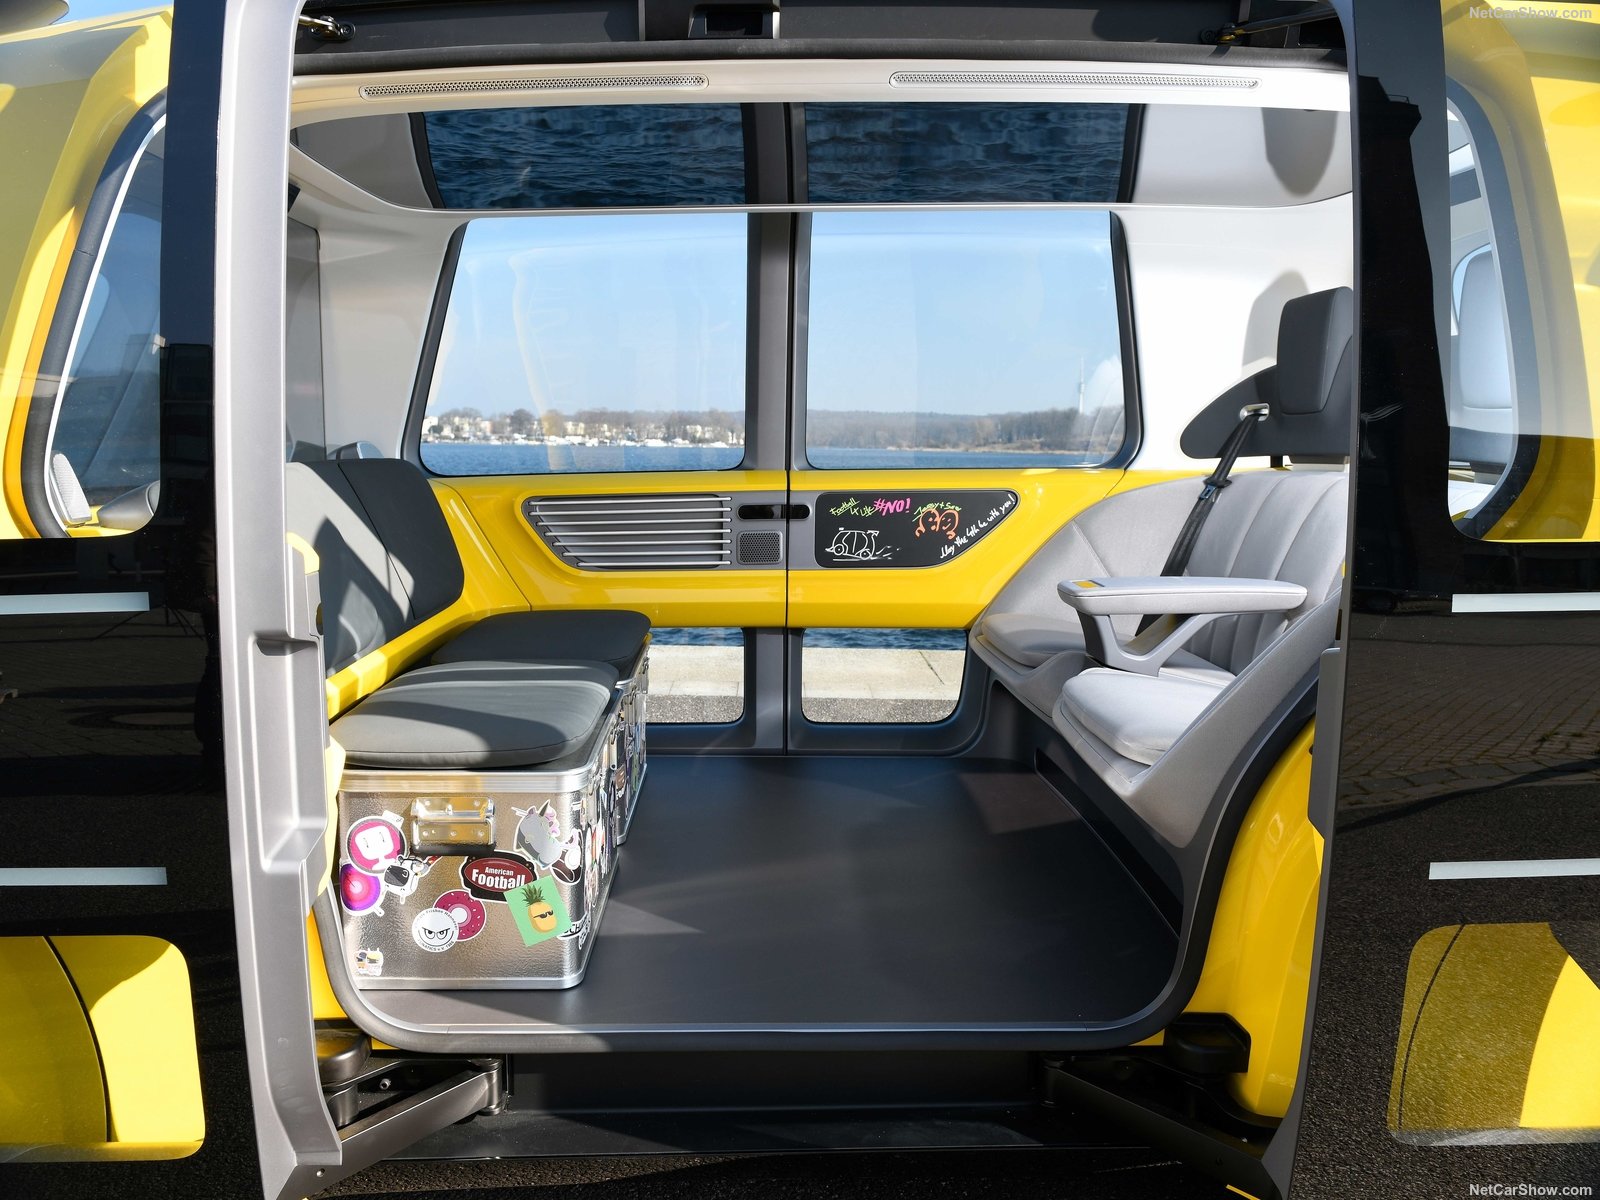 2018 Volkswagen Sedric School Bus Concept, Transport Wallpaper